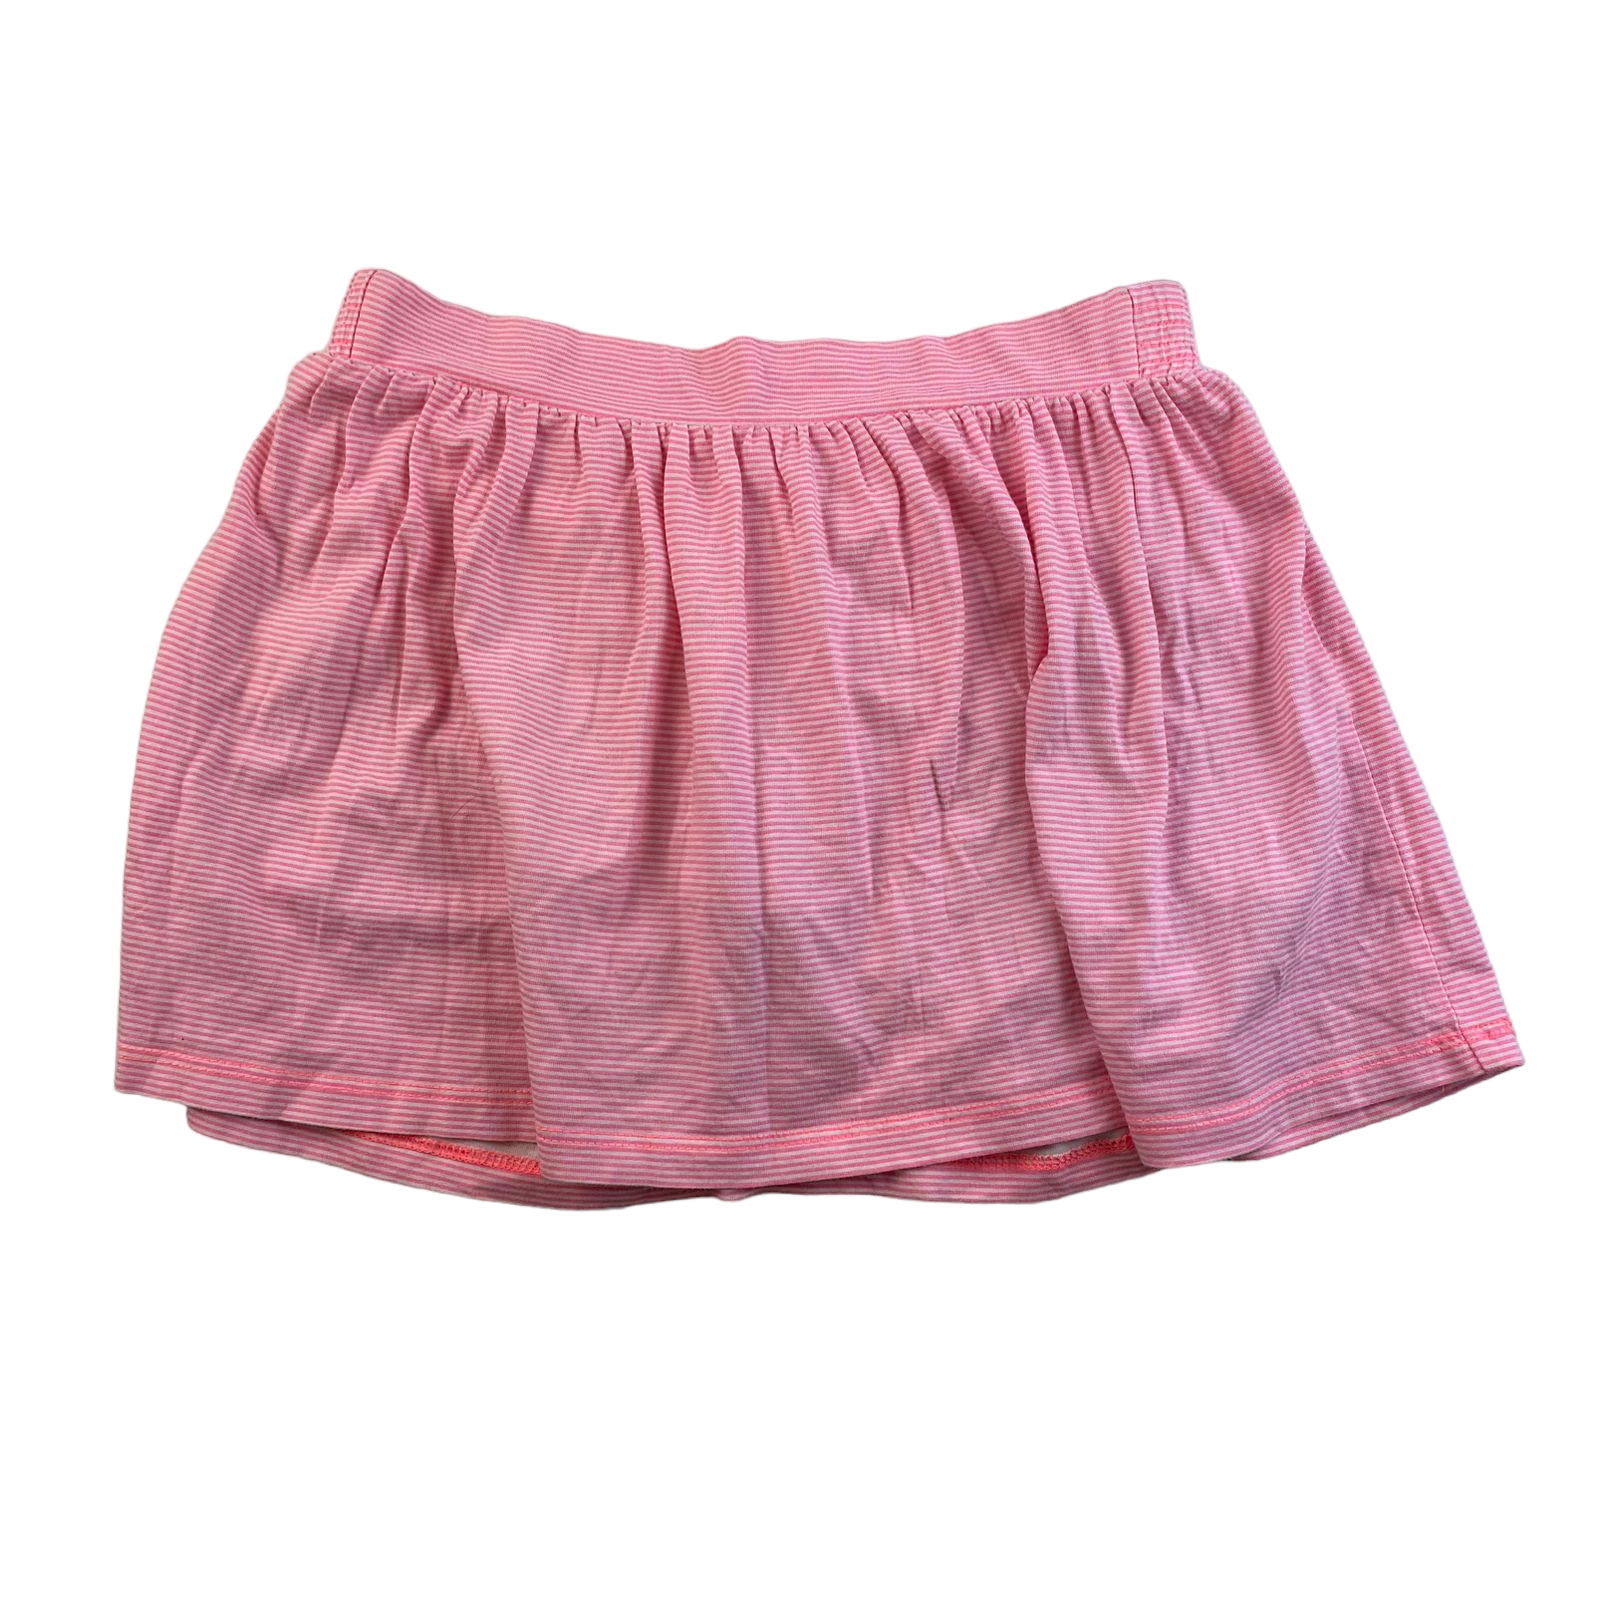 Falda con rayas blancas y rosado neon